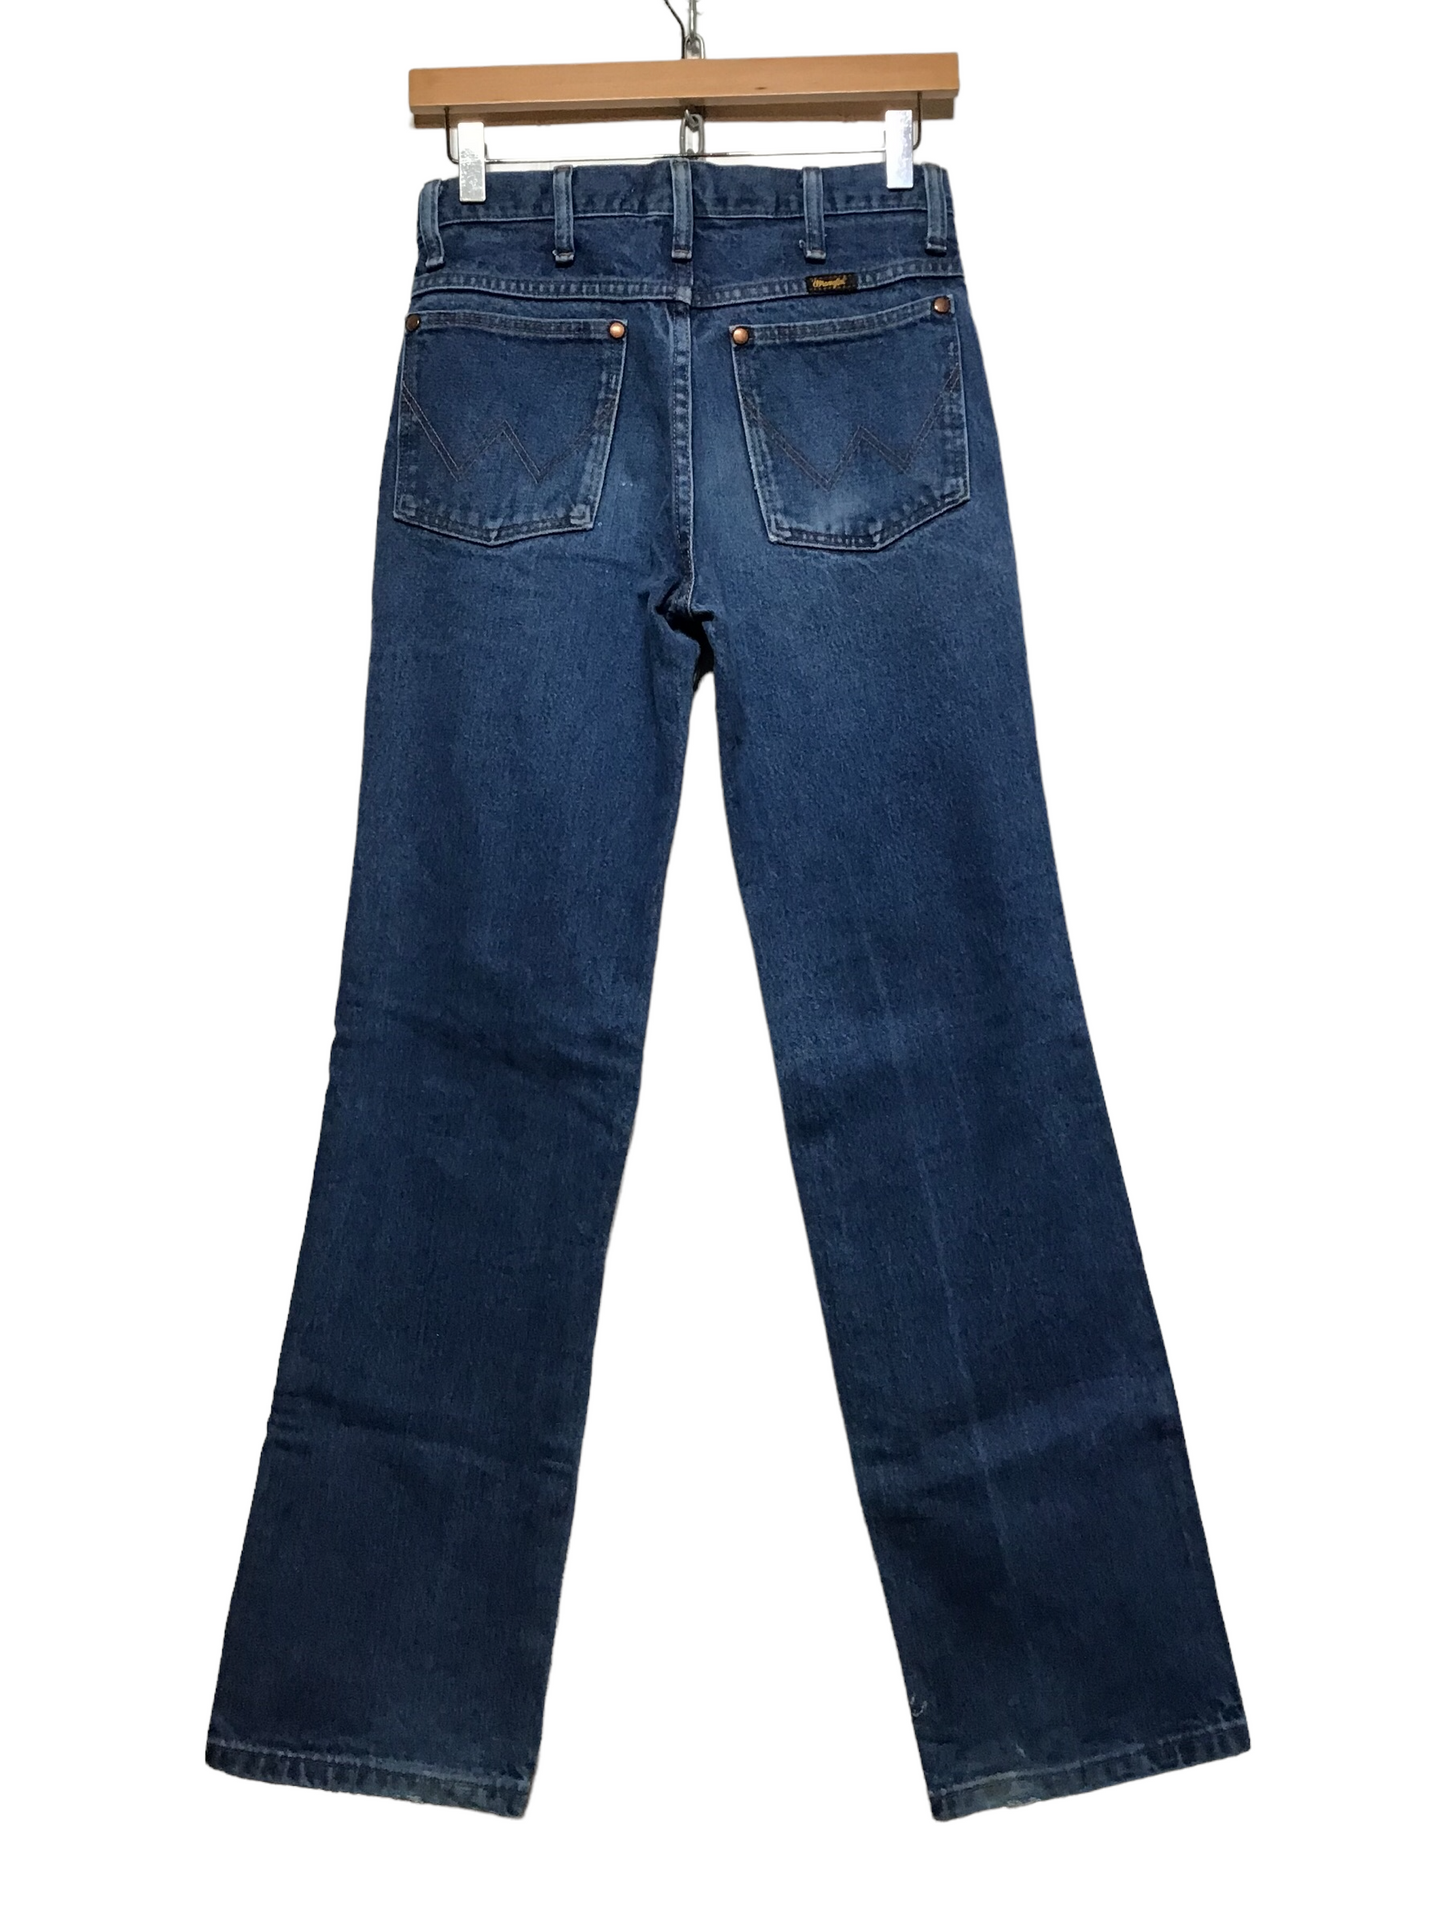 High Waisted Wrangler Jeans (28X30)